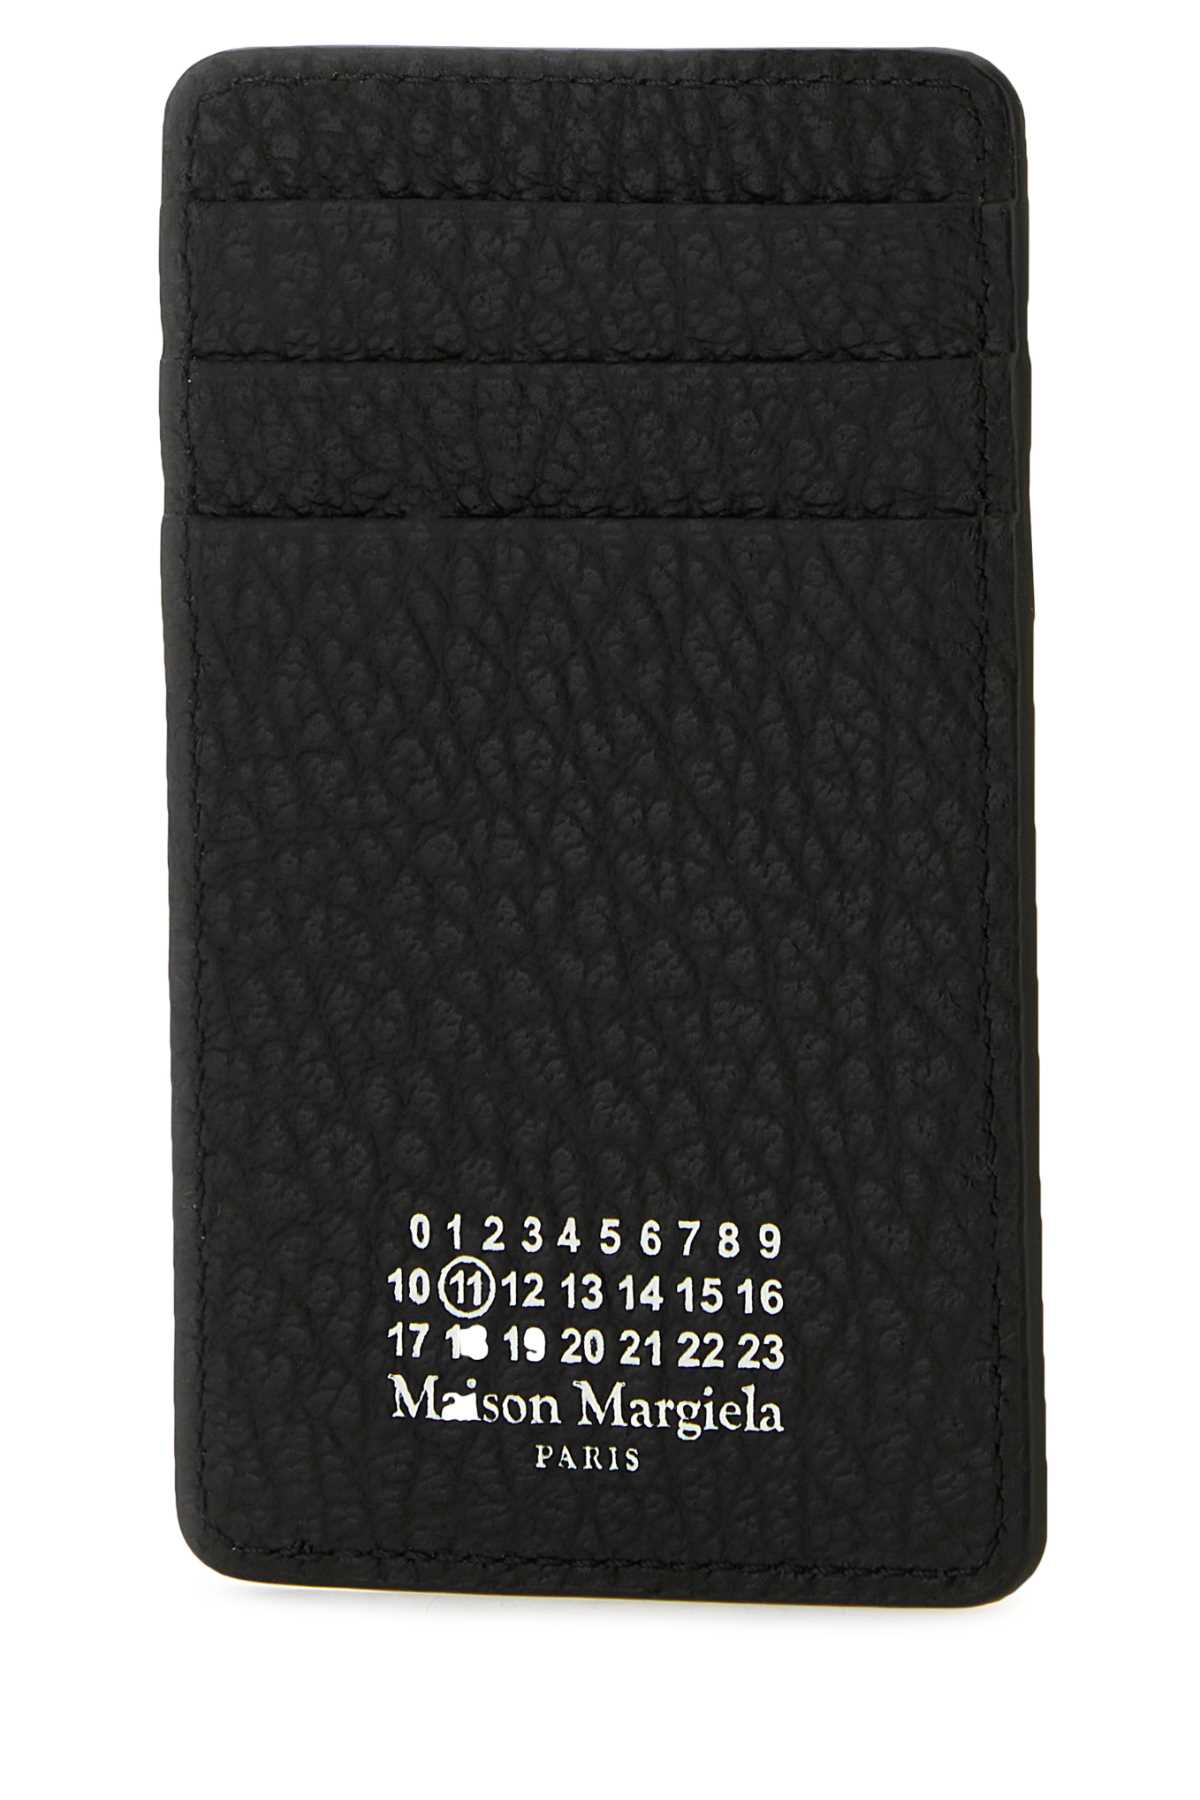 MAISON MARGIELA BLACK LEATHER CARD HOLDER